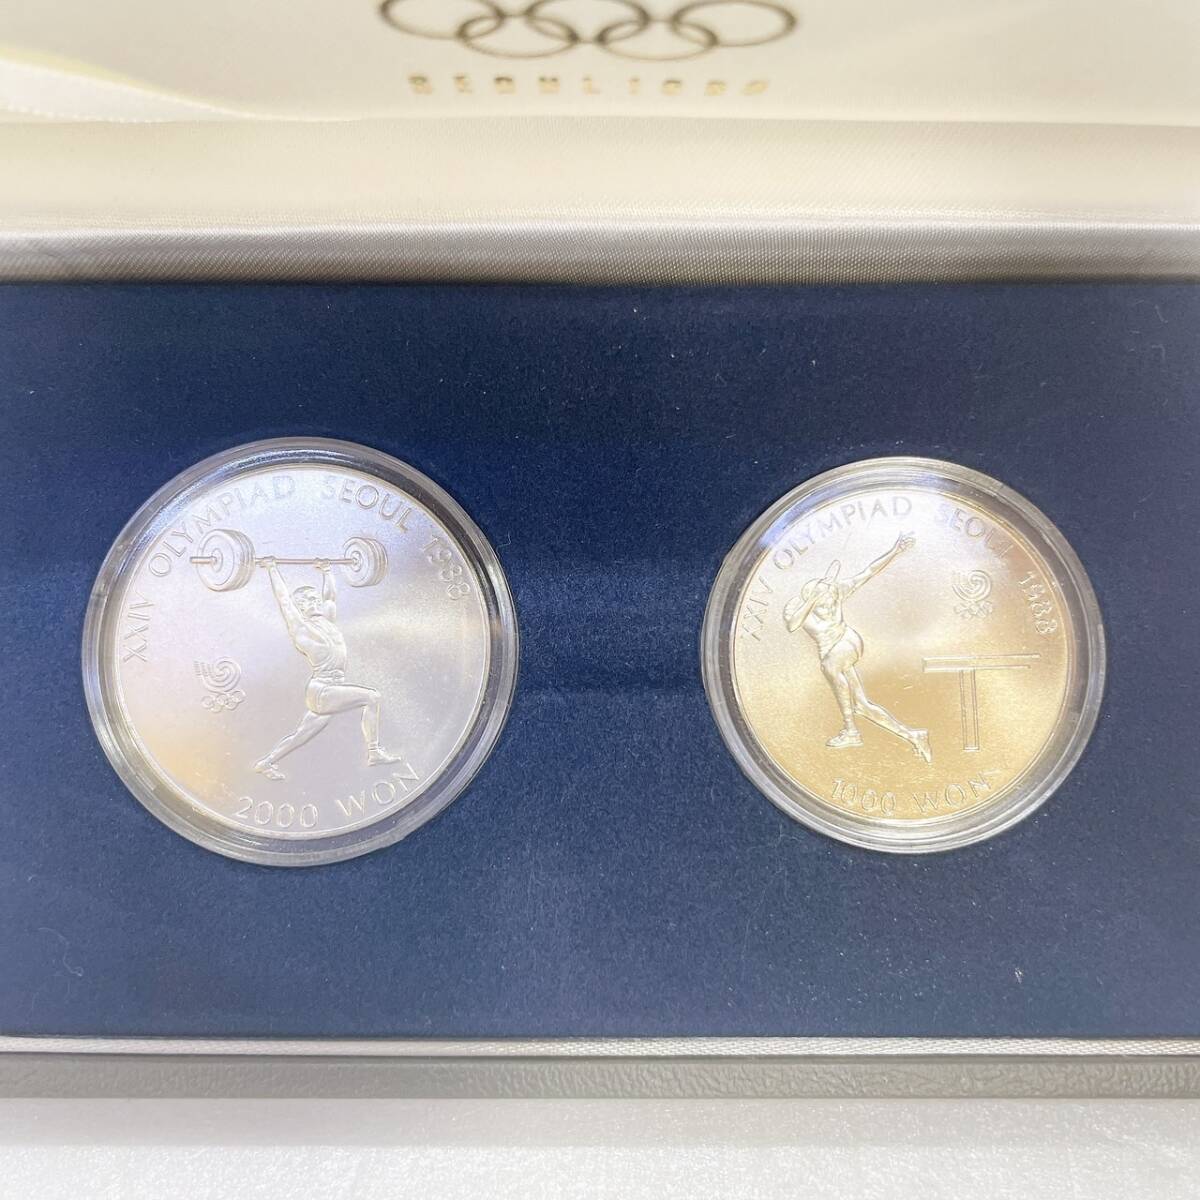 [DHS3101HM]SEOUL1988 душа Olympic медаль памятная монета памятная монета комплект Корея монета 